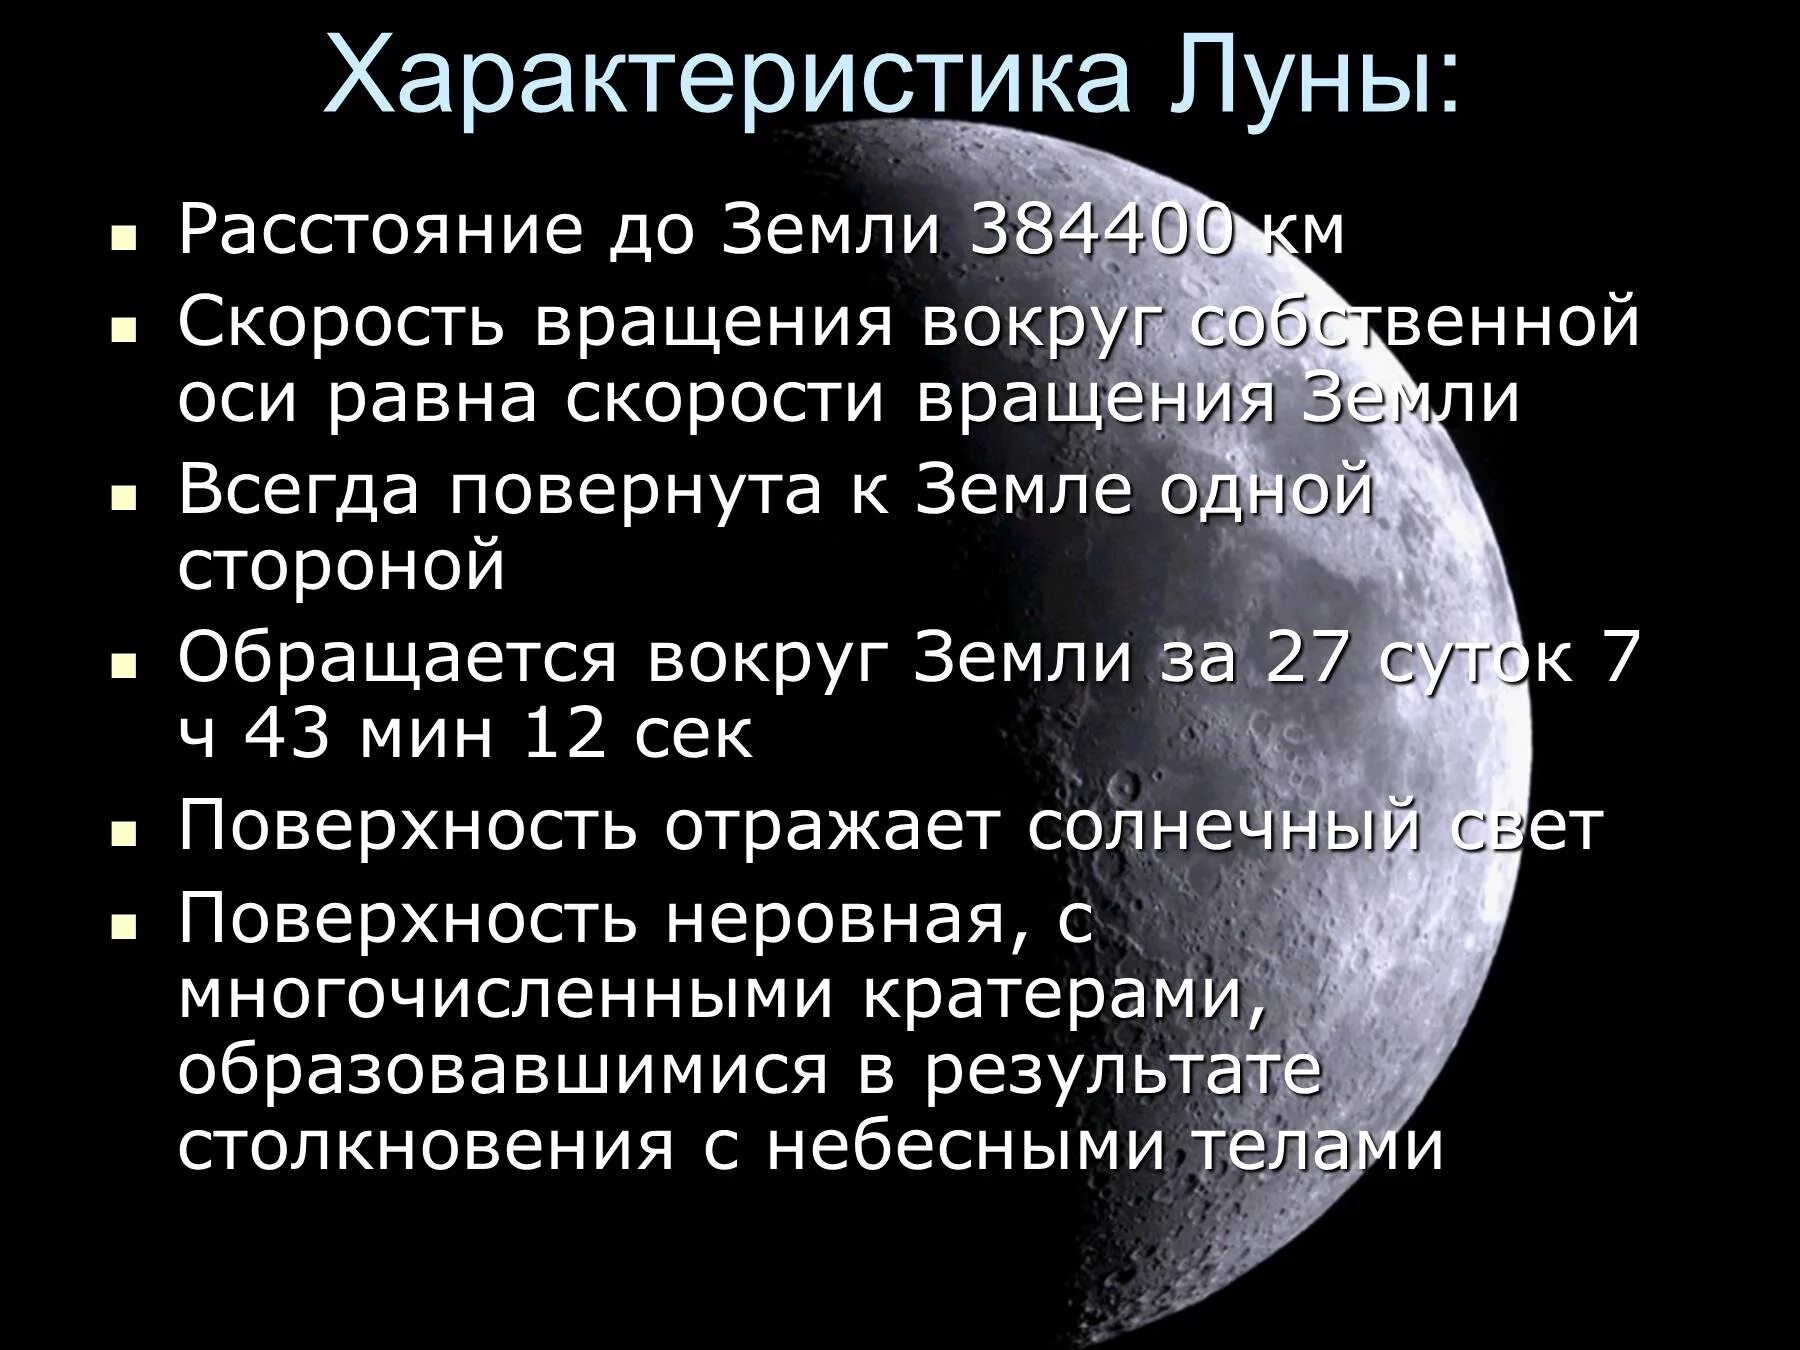 Скорость луны в км. Характеристика Луны. Луна краткая характеристика. Физические характеристики Луны. Характеристика Луны кратко.